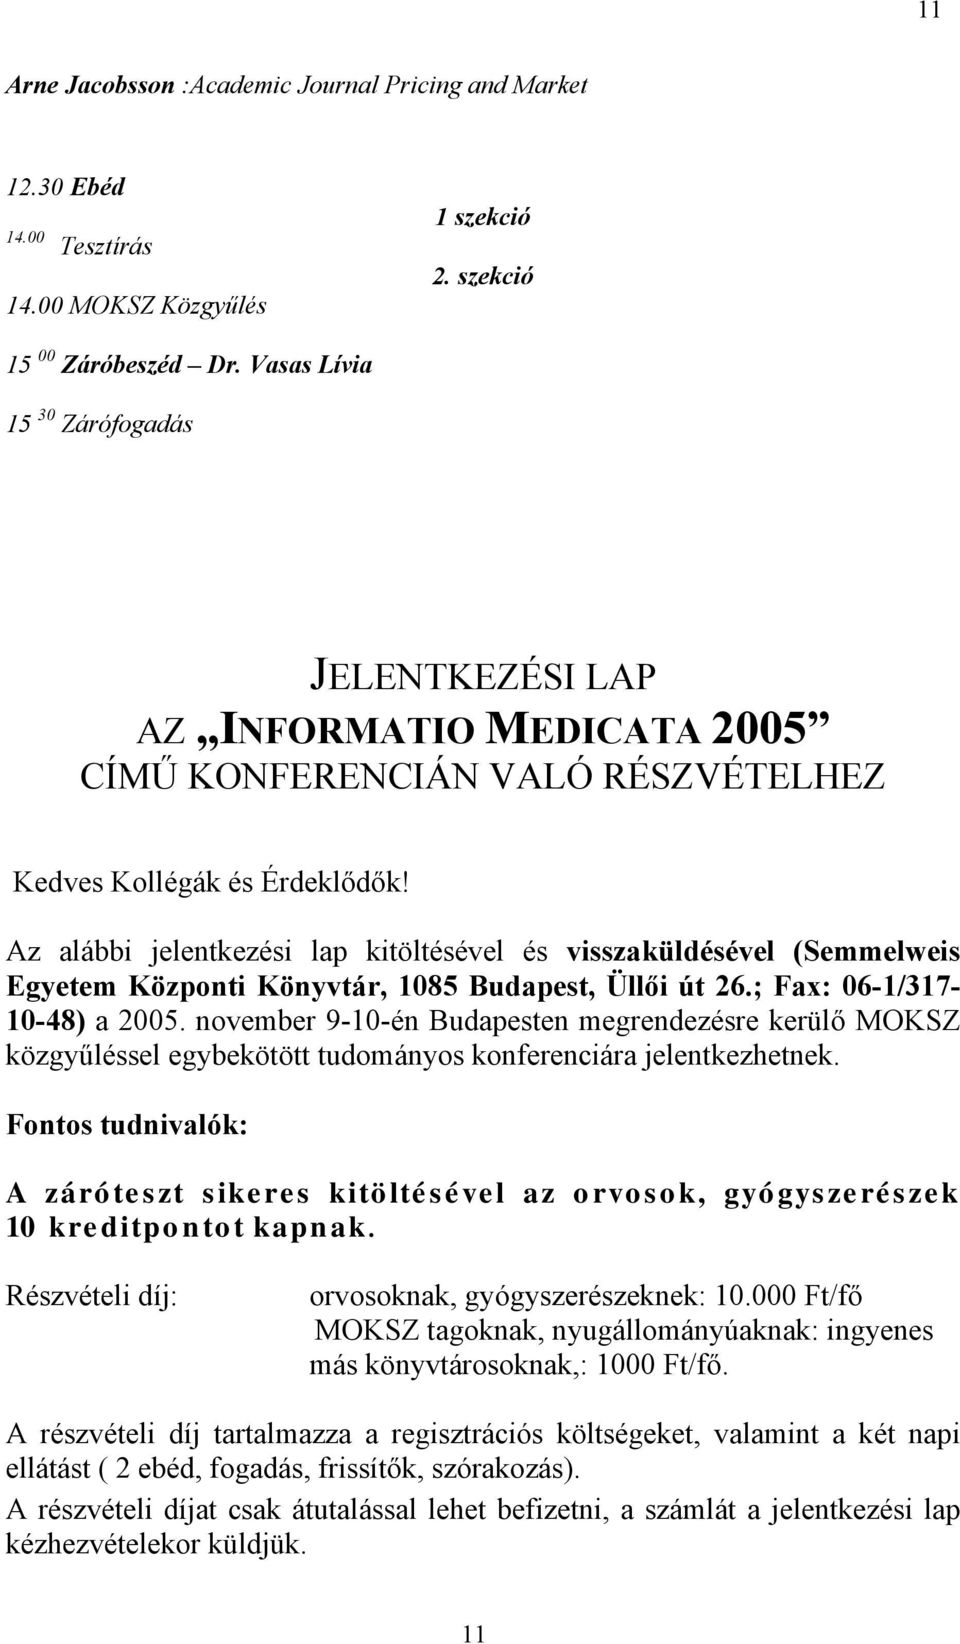 Az alábbi jelentkezési lap kitöltésével és visszaküldésével (Semmelweis Egyetem Központi Könyvtár, 1085 Budapest, Üllői út 26.; Fax: 06-1/317-10-48) a 2005.